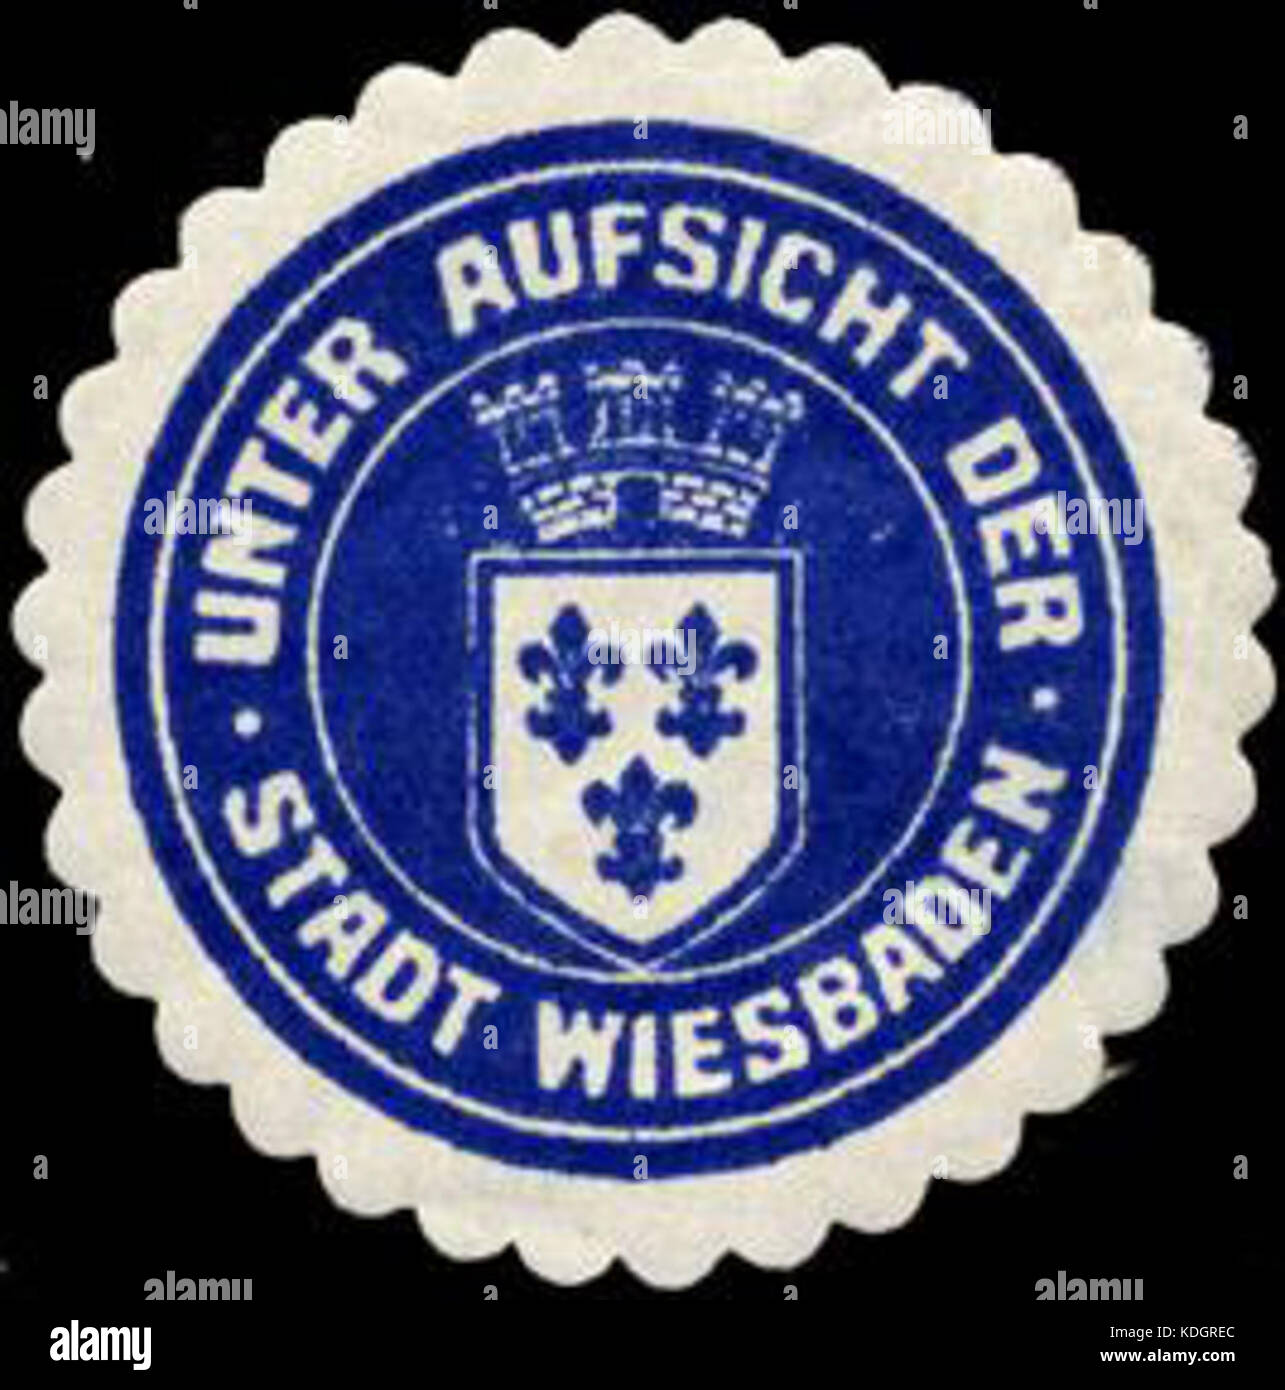 Siegelmarke Unter Aufsicht der Stadt Wiesbaden W0210891 Stock Photo